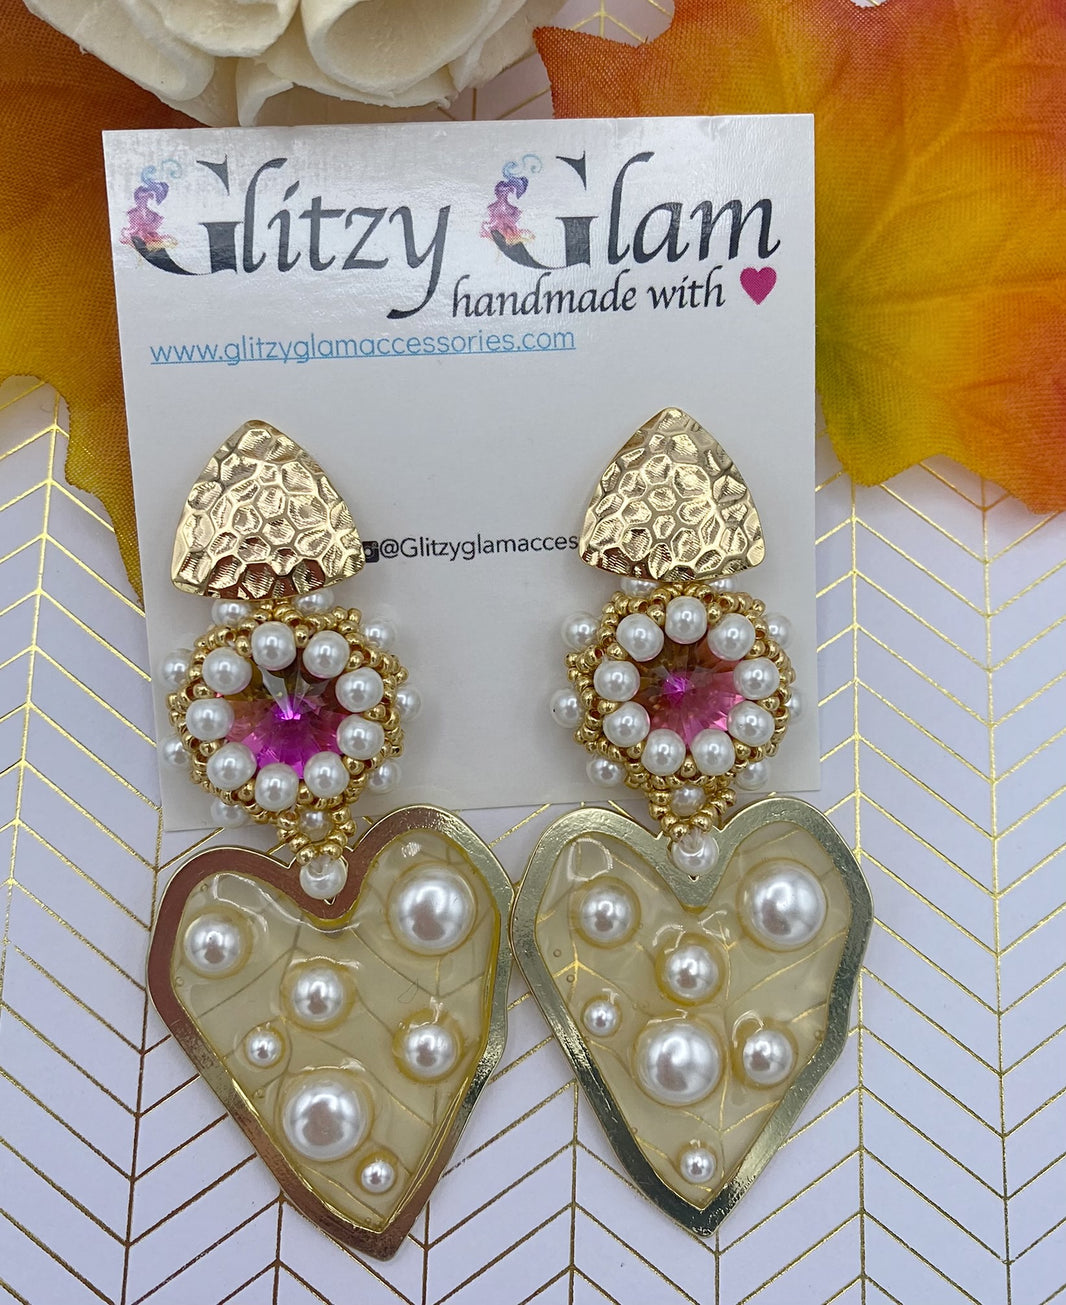 GLITZY GLAM CLOTHES & ACCESSORIES – Glitzy Glam Accessories